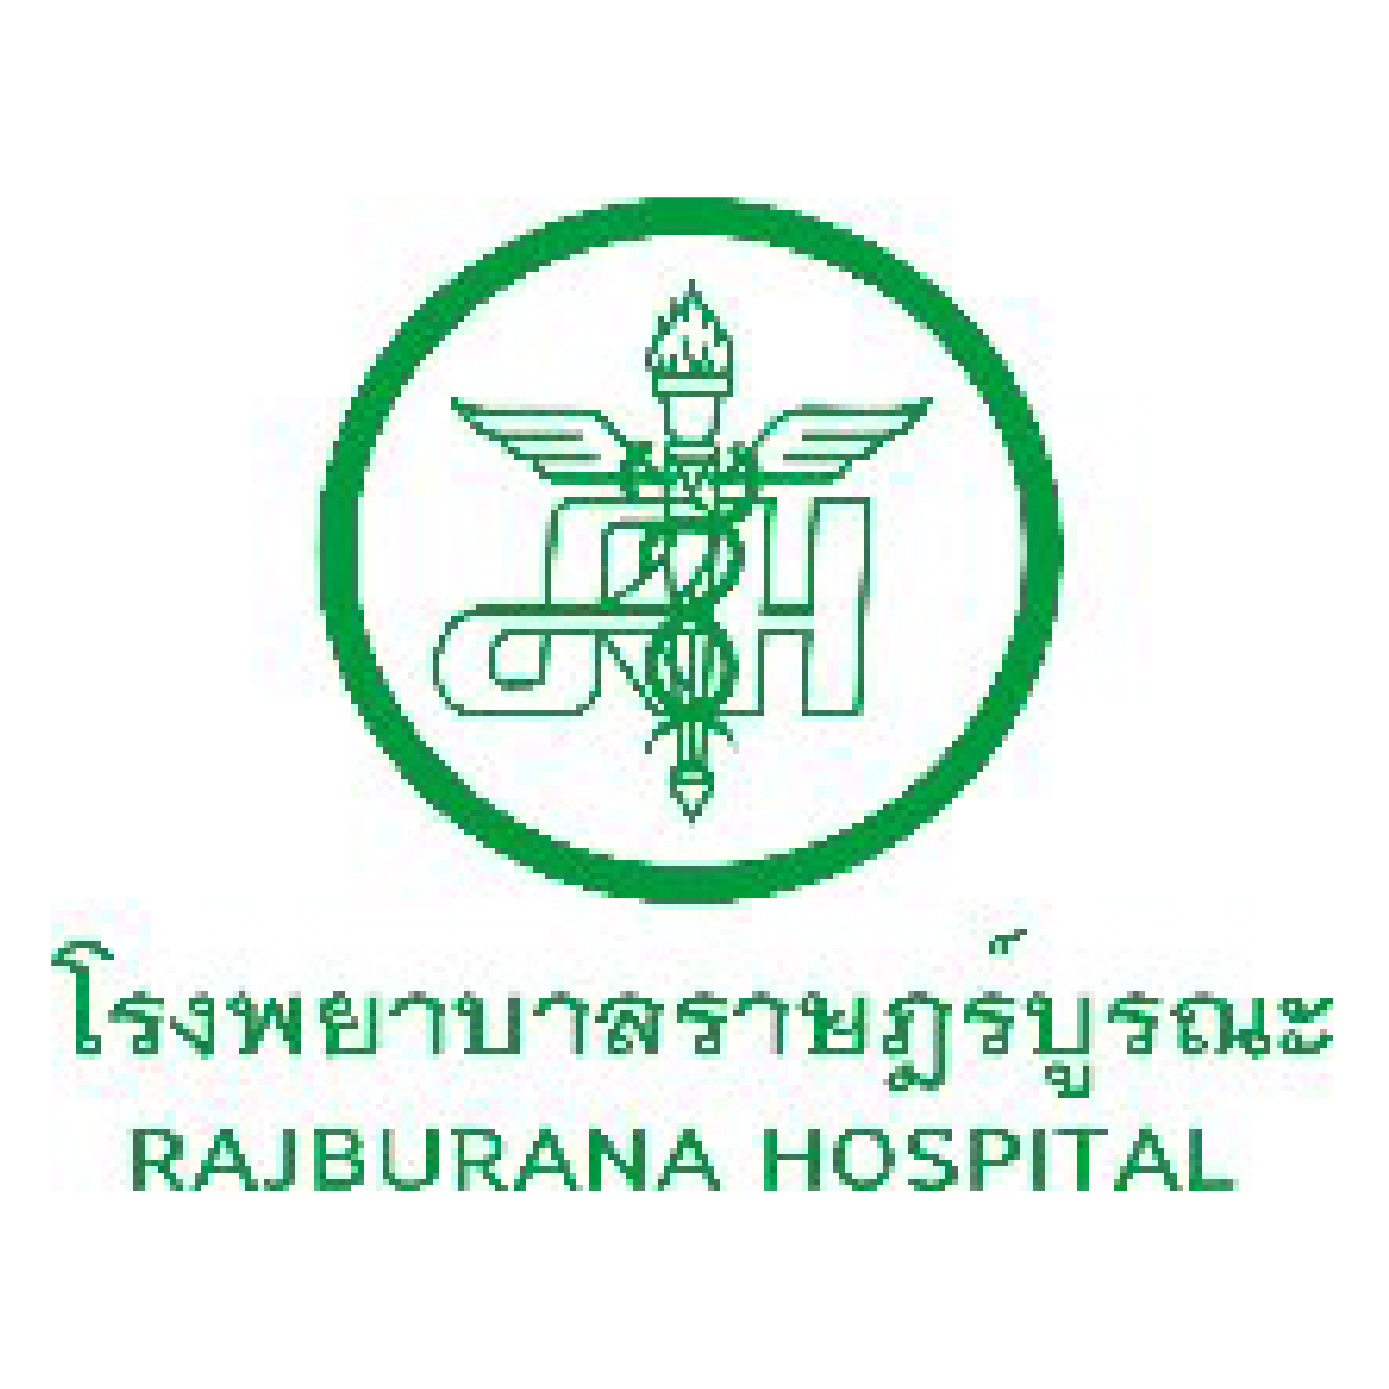 Rajburana Hospital 01